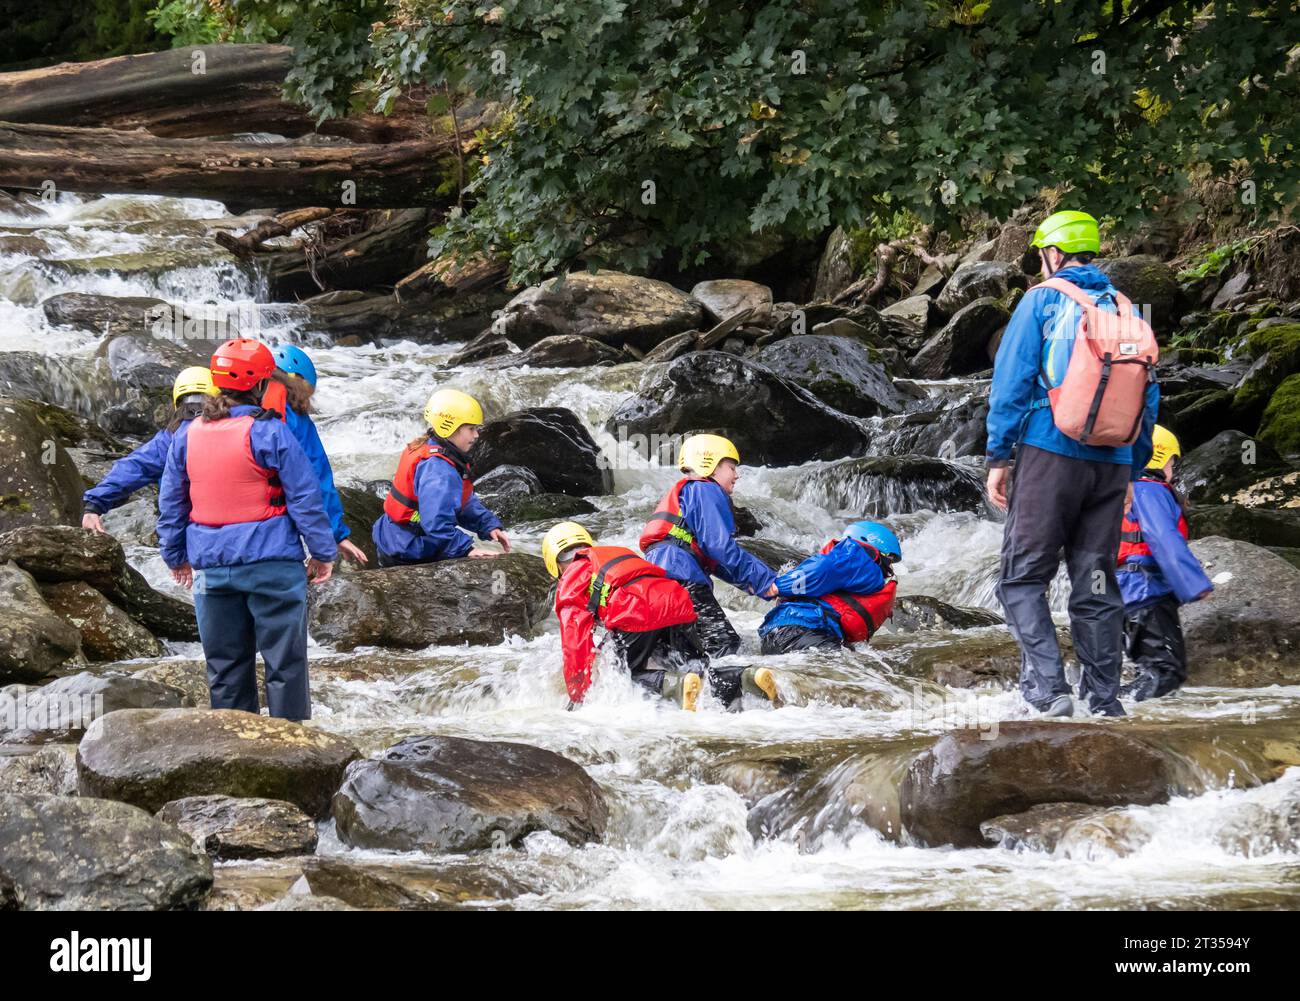 Un groupe d'enfants en voyage d'aventure, explorant la rivière à Tilberthwaite près de Coniston, Lake District, Royaume-Uni Banque D'Images